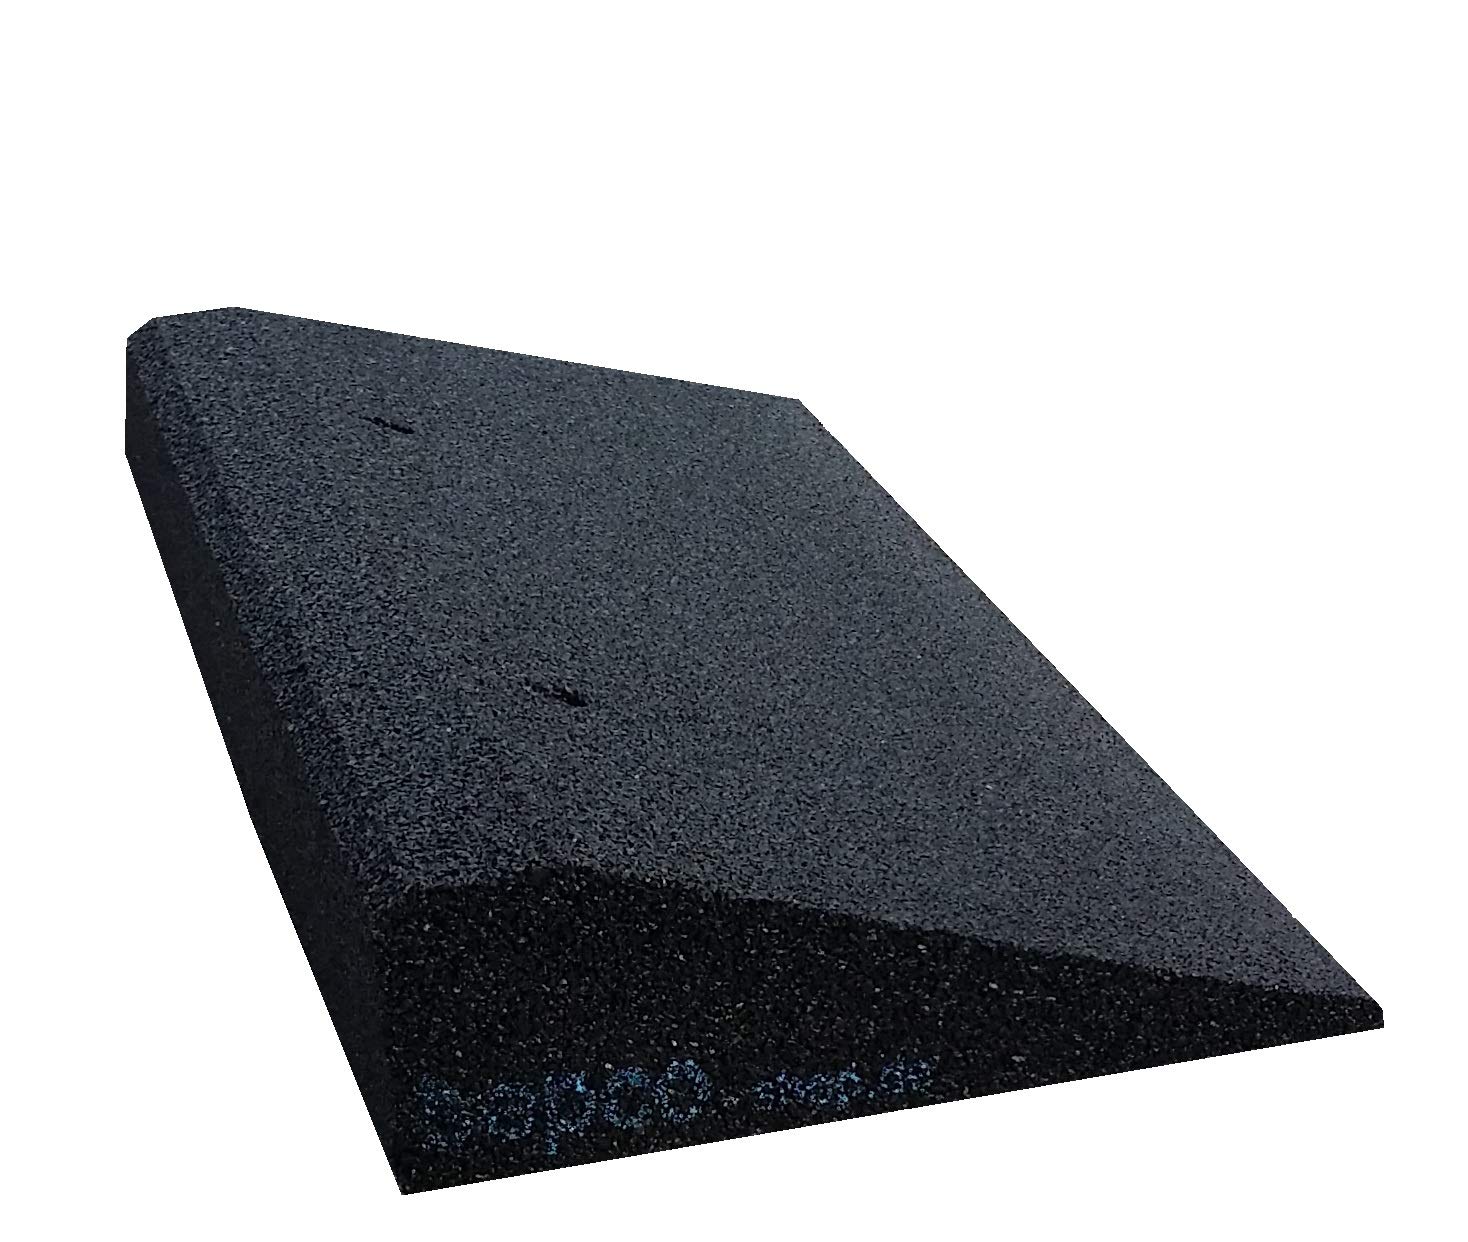 bepco Bordsteinkanten-Rampe, LxBxH: 50 x 25 x 6 cm aus Gummi (schwarz) Auffahrrampe,Türschwellenrampe, mit eingelagerten Unterlegscheiben zur Befestigung